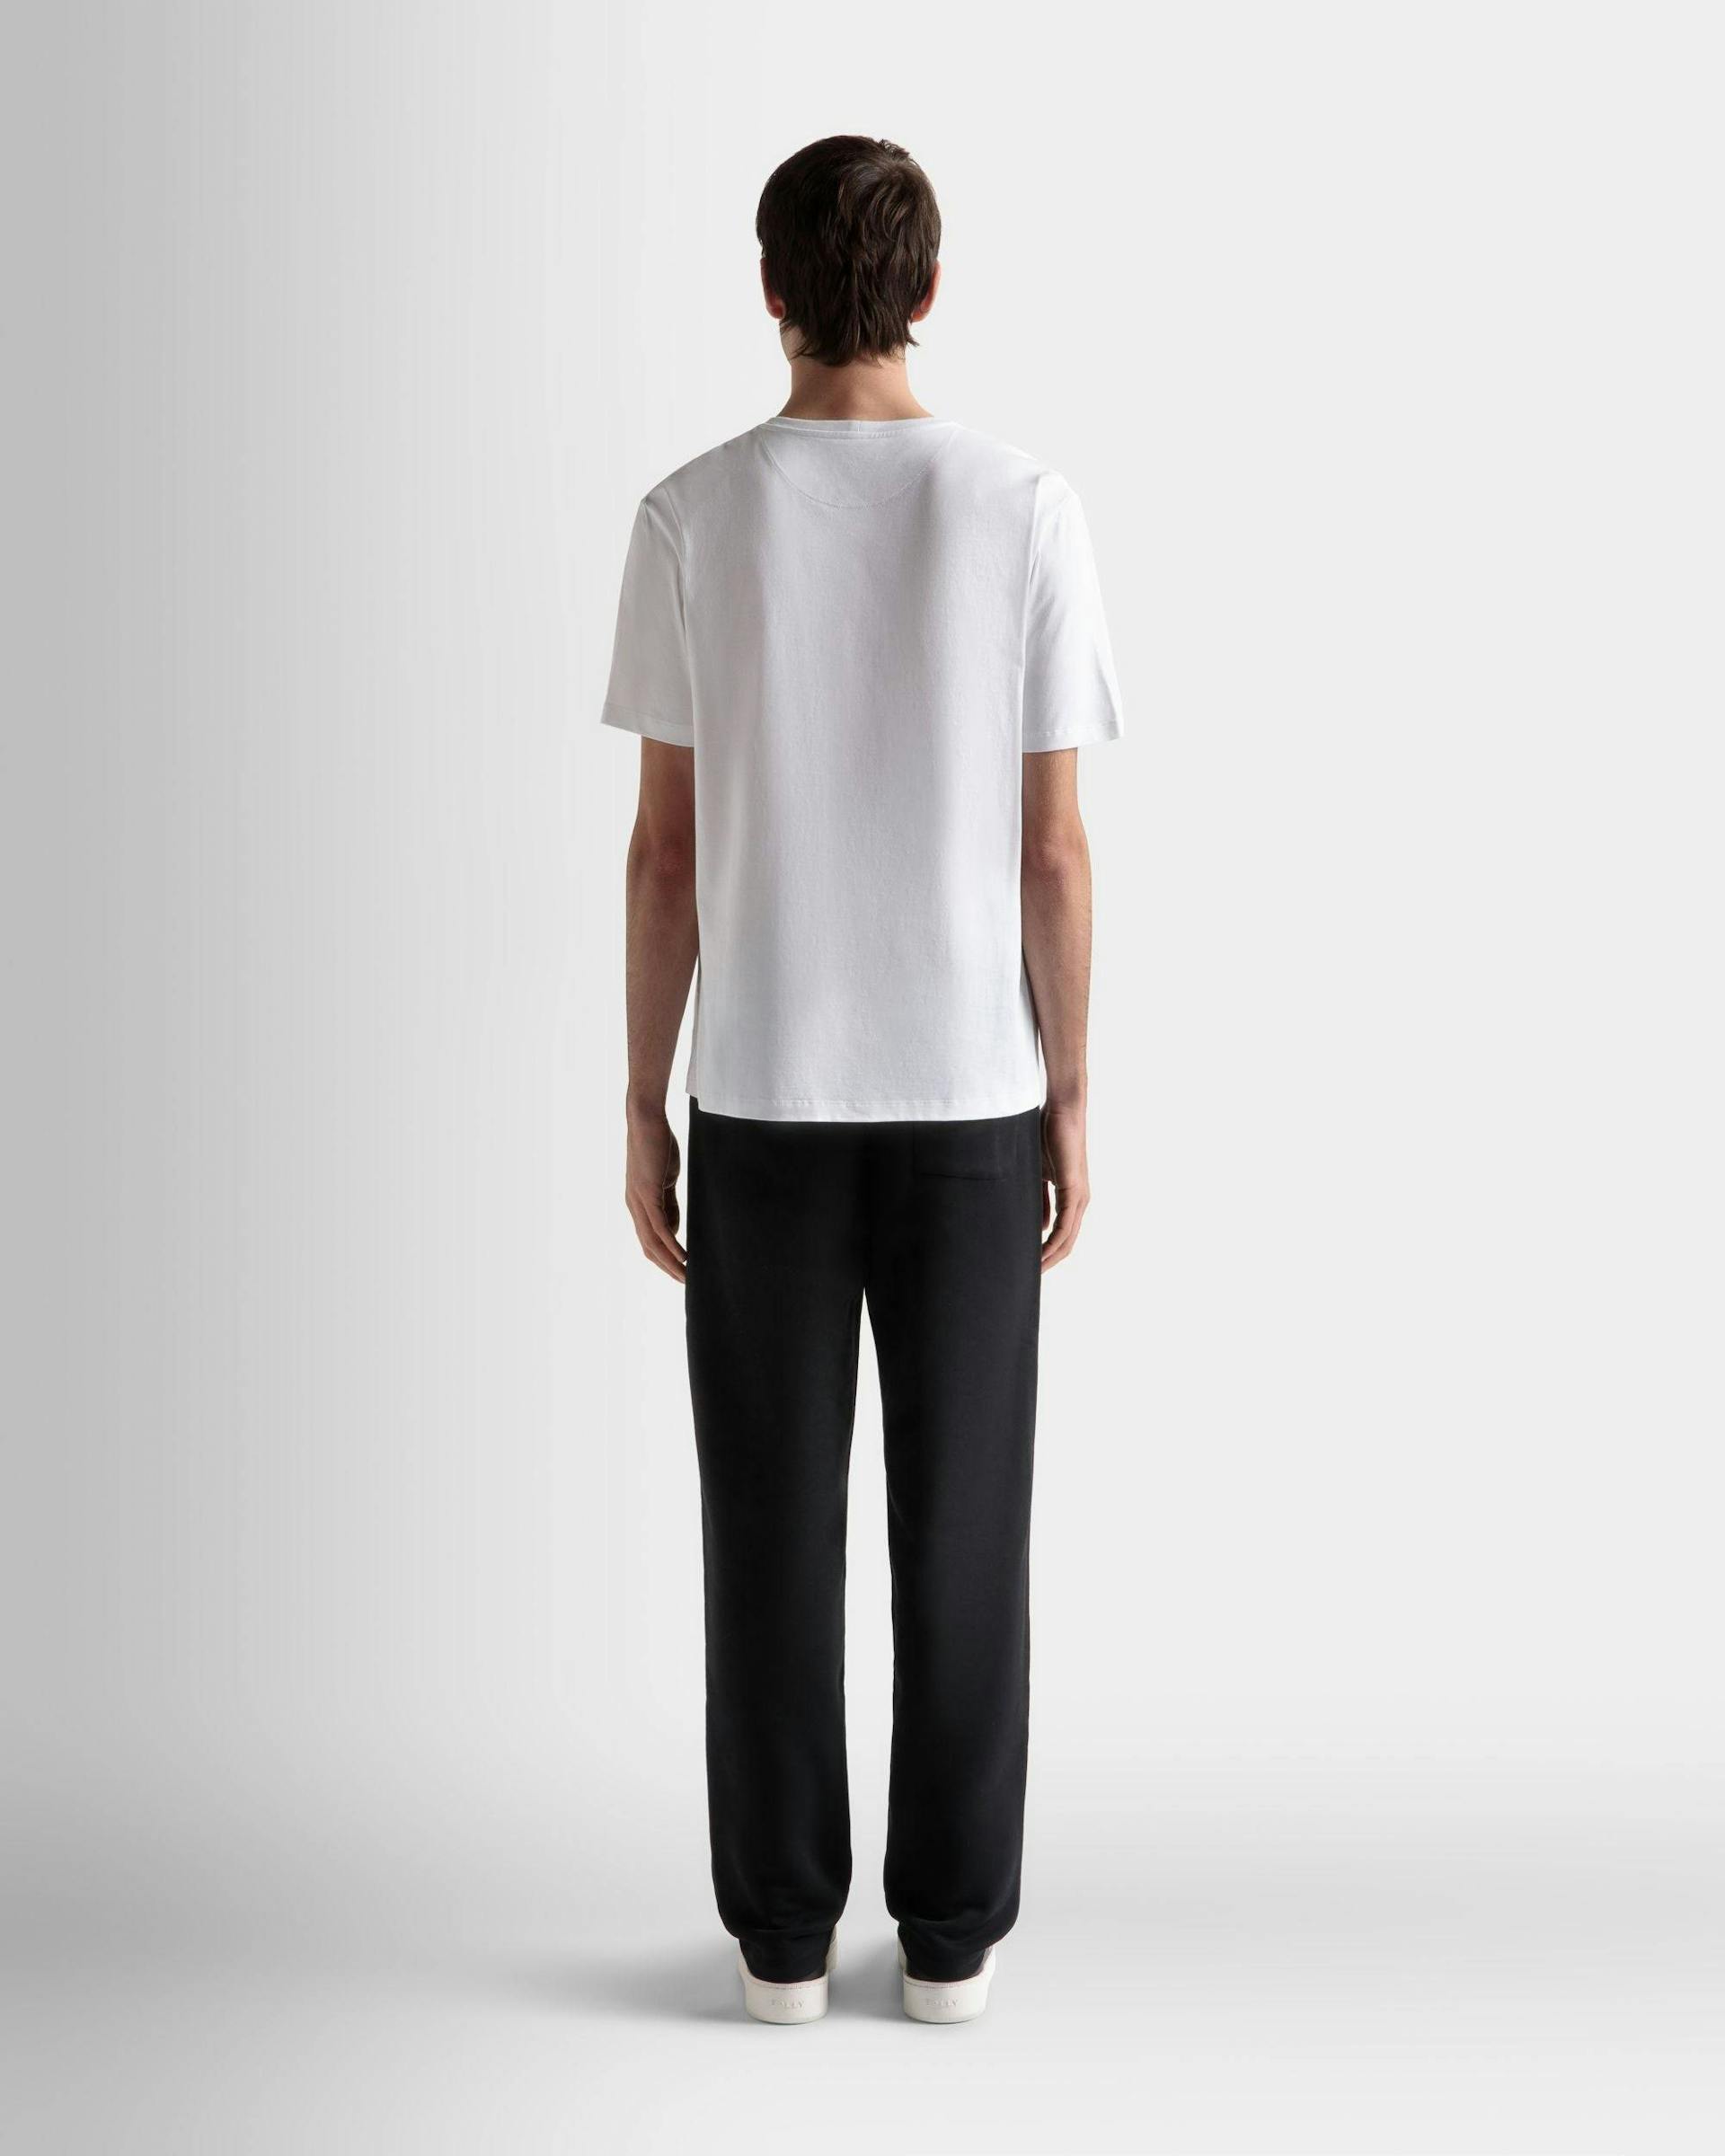 Men's T-Shirt In White Cotton | Bally | On Model Back